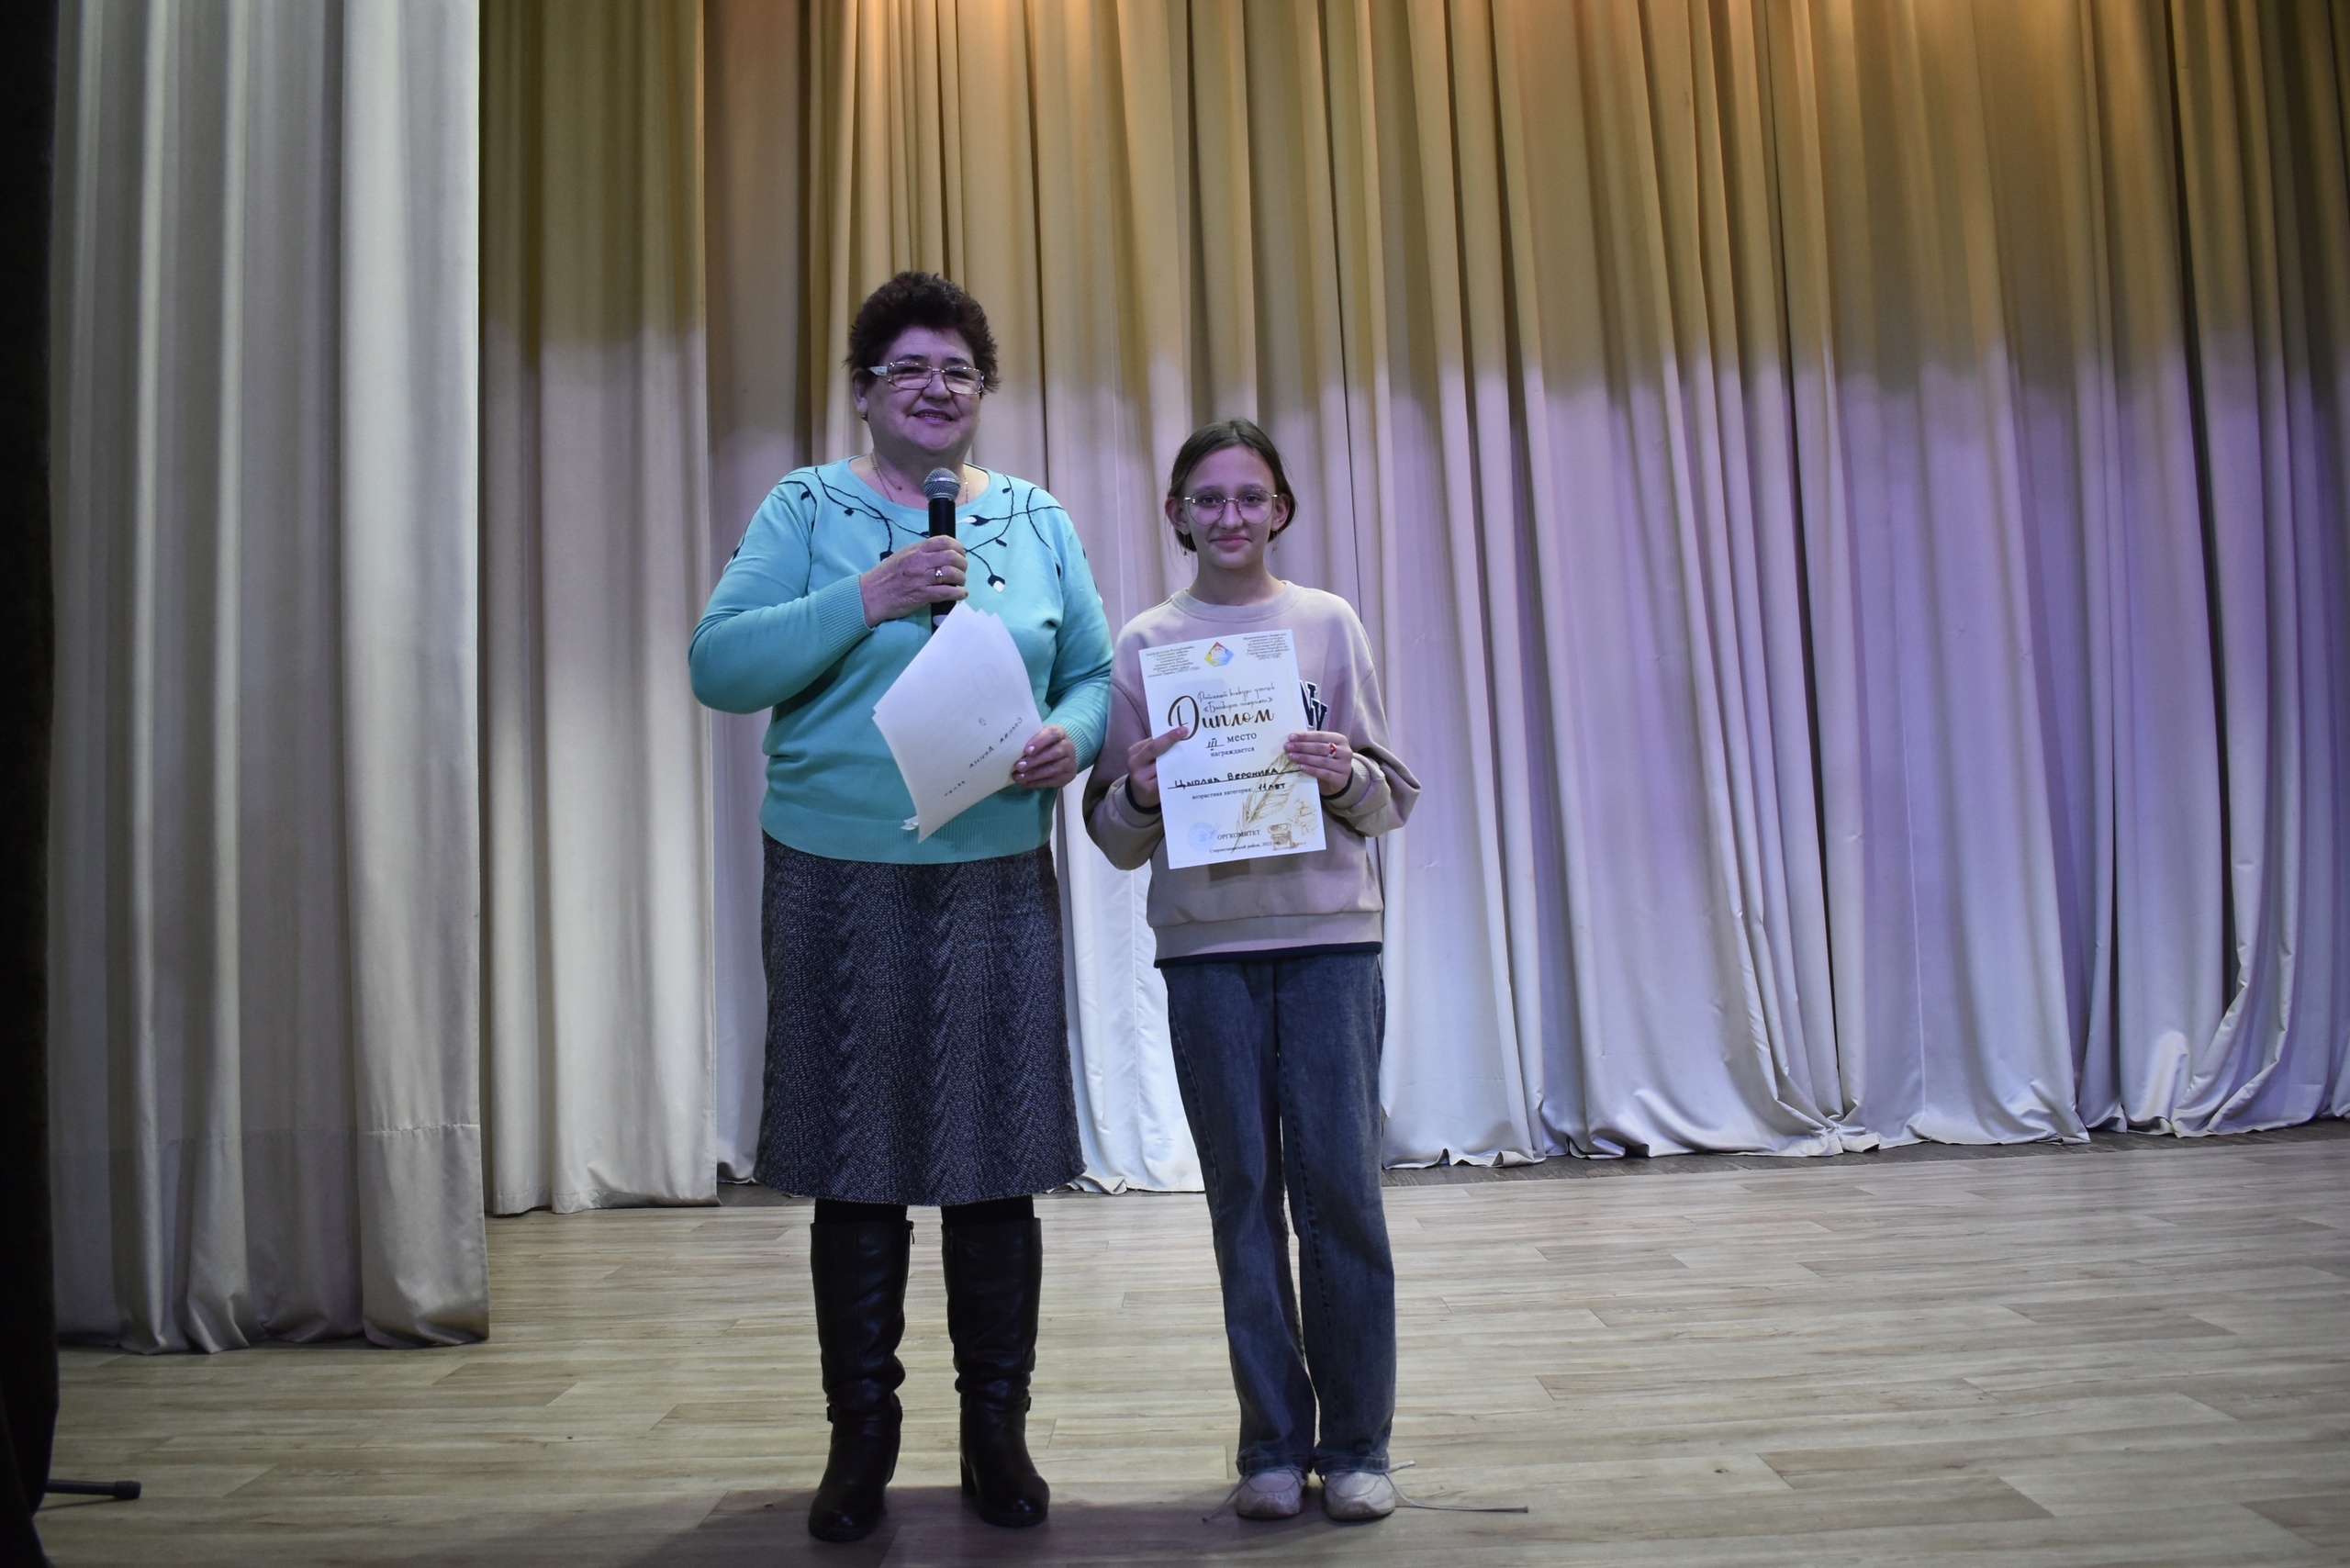 В Стерлитамакском районе был проведен конкурс чтецов, посвященный Дню башкирского языка